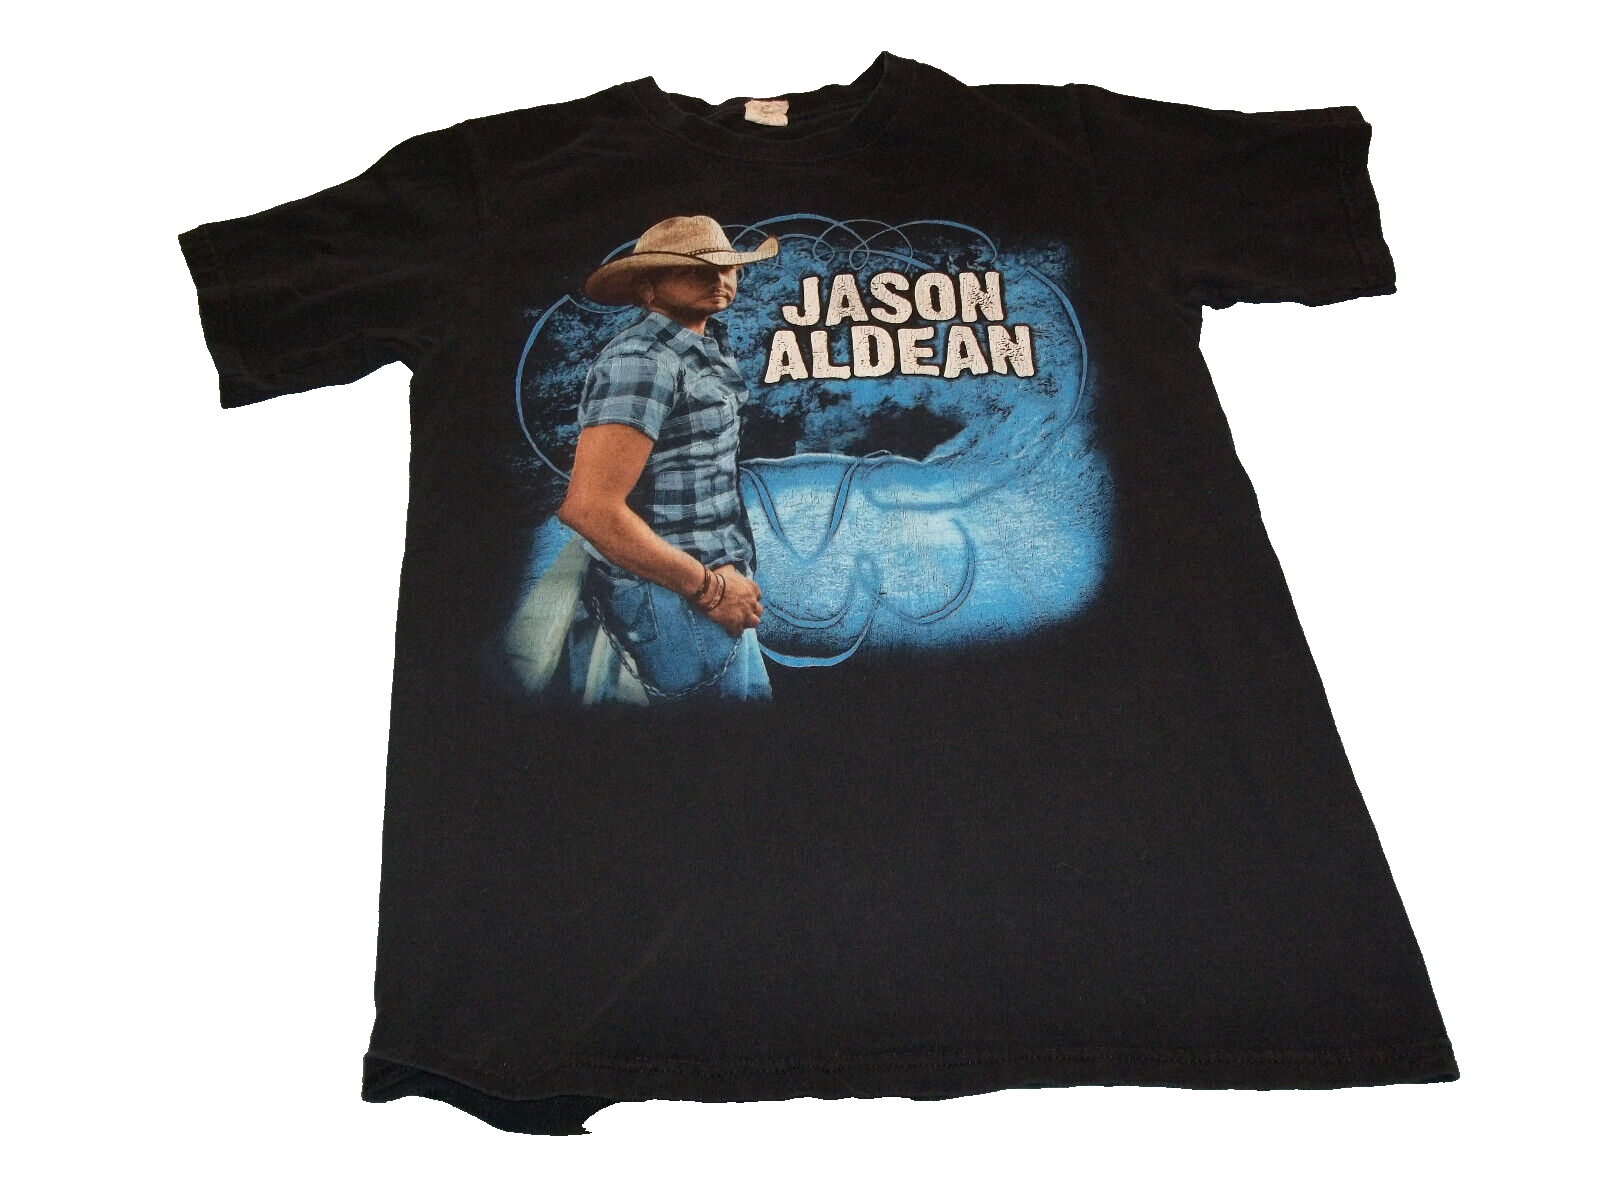 Jason Aldean My Kinda Party 2011 Tour double sided black T-Shirt Size S - $16.82